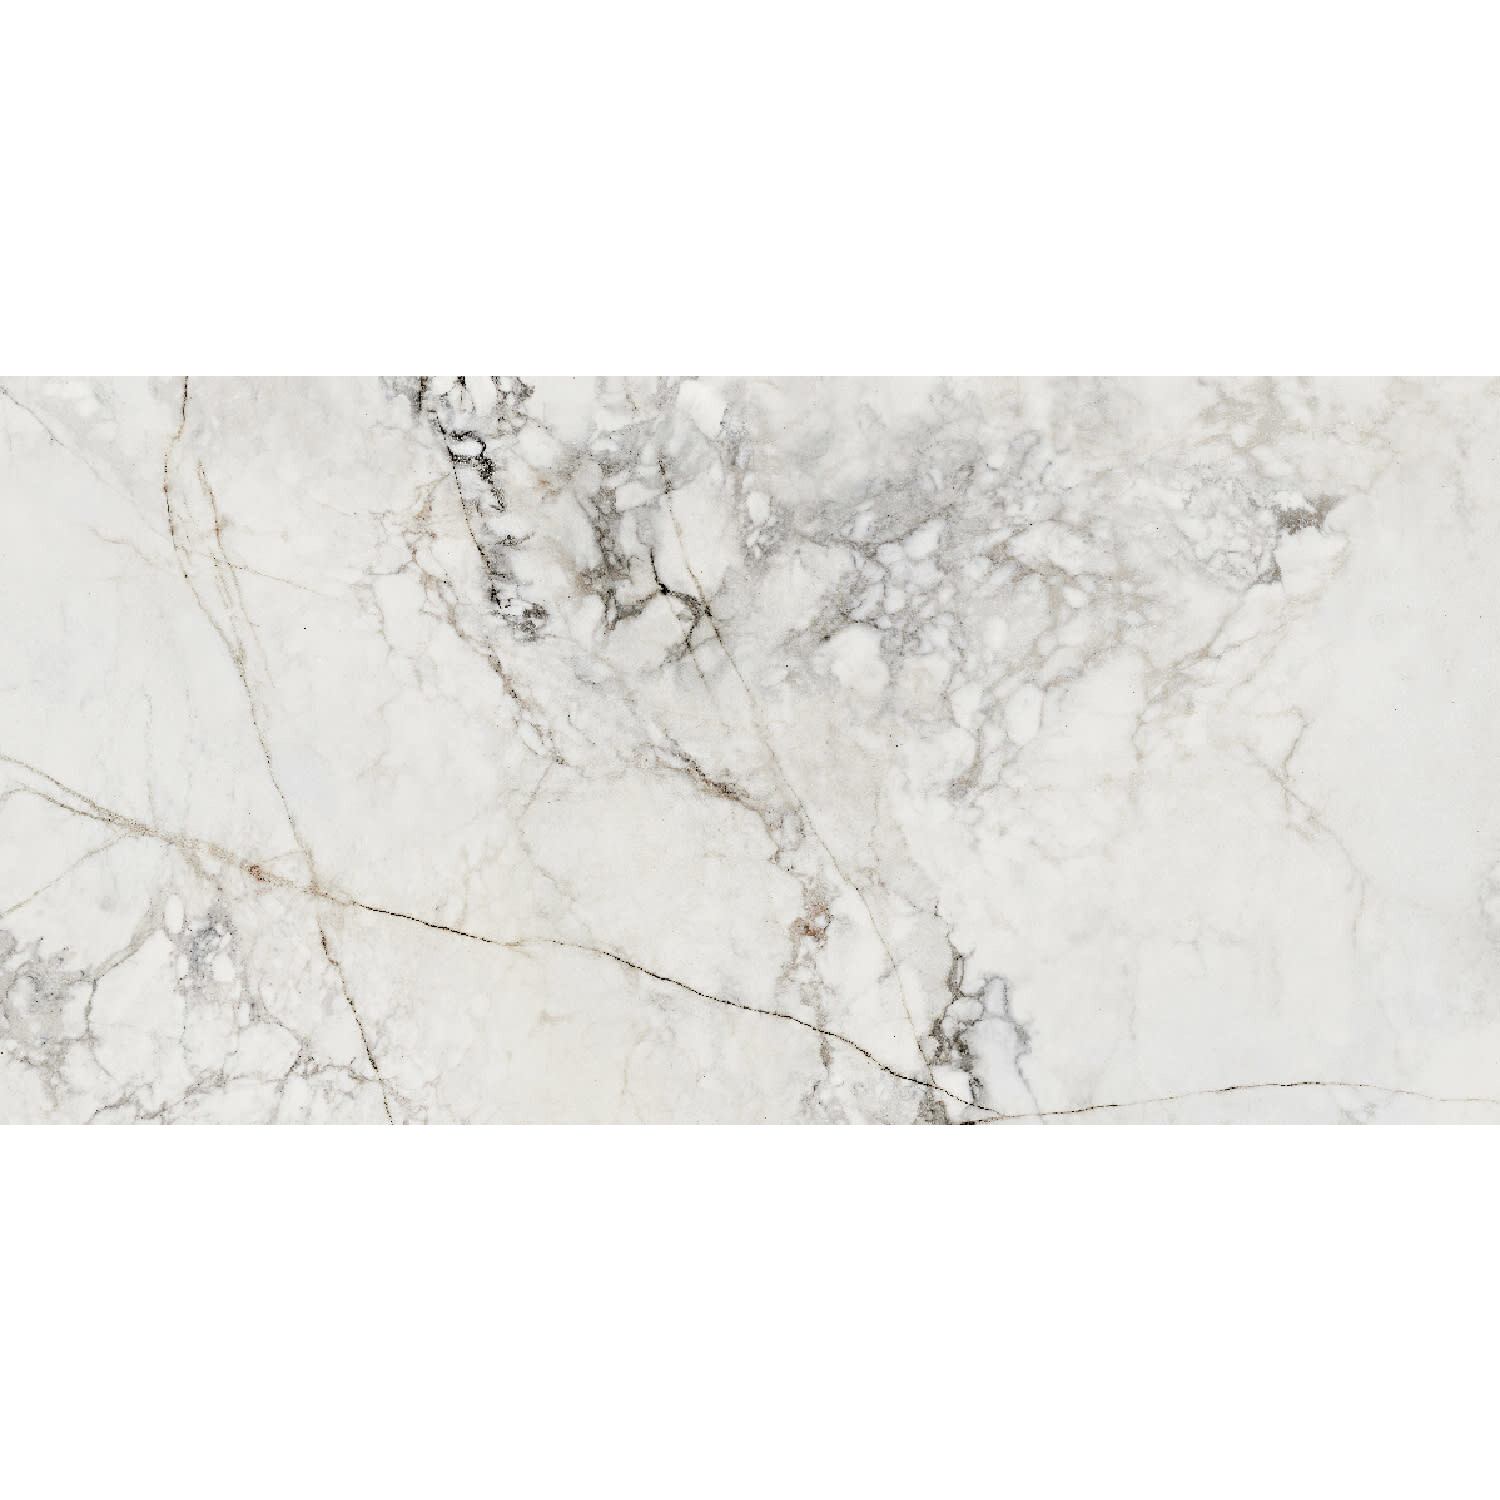 Vloer- en wandtegel wit marmerlook Balance stone mat 120 x 60 cm